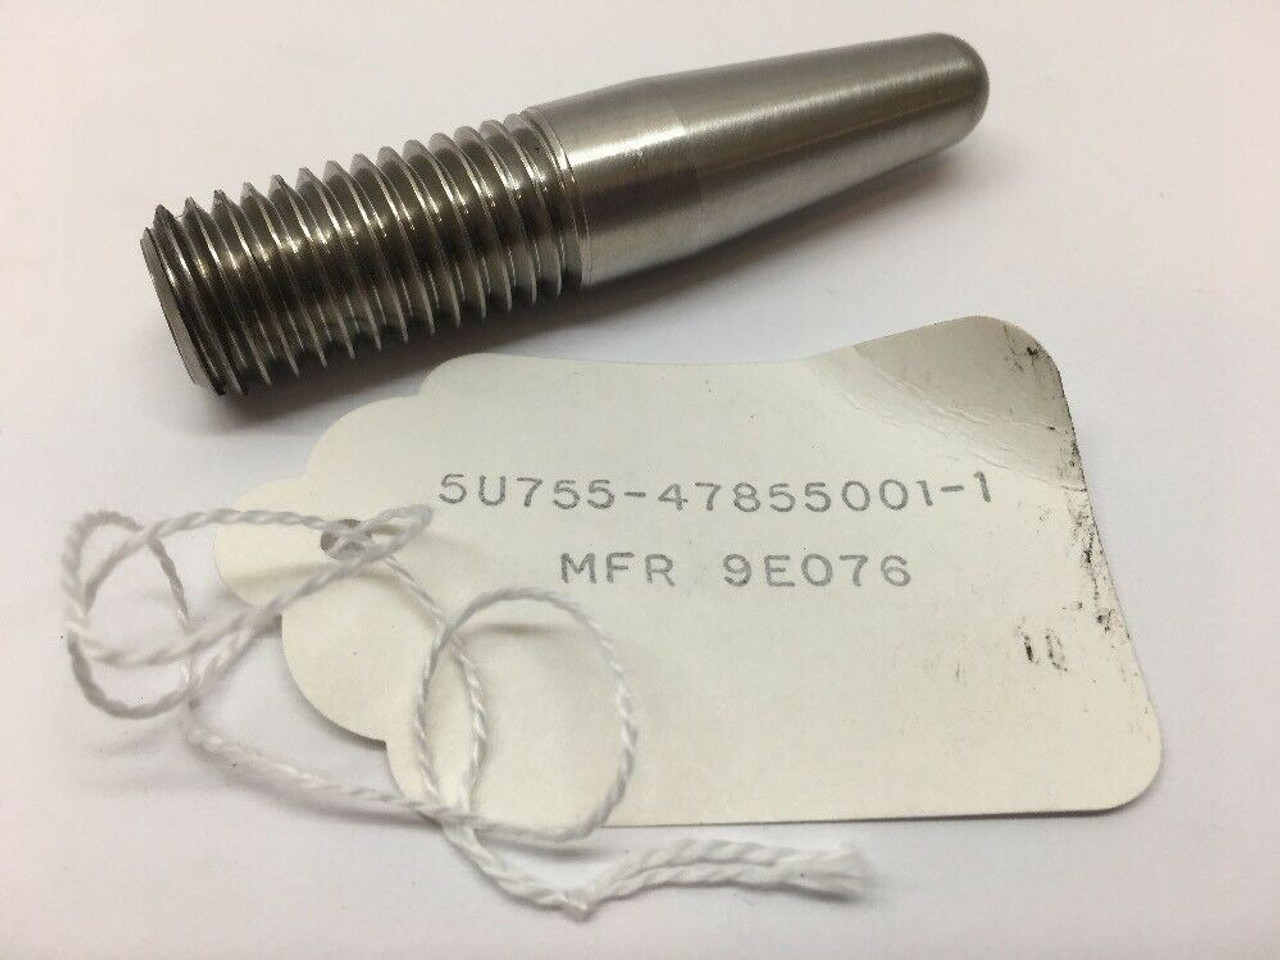 Shear Pin 47855001-1